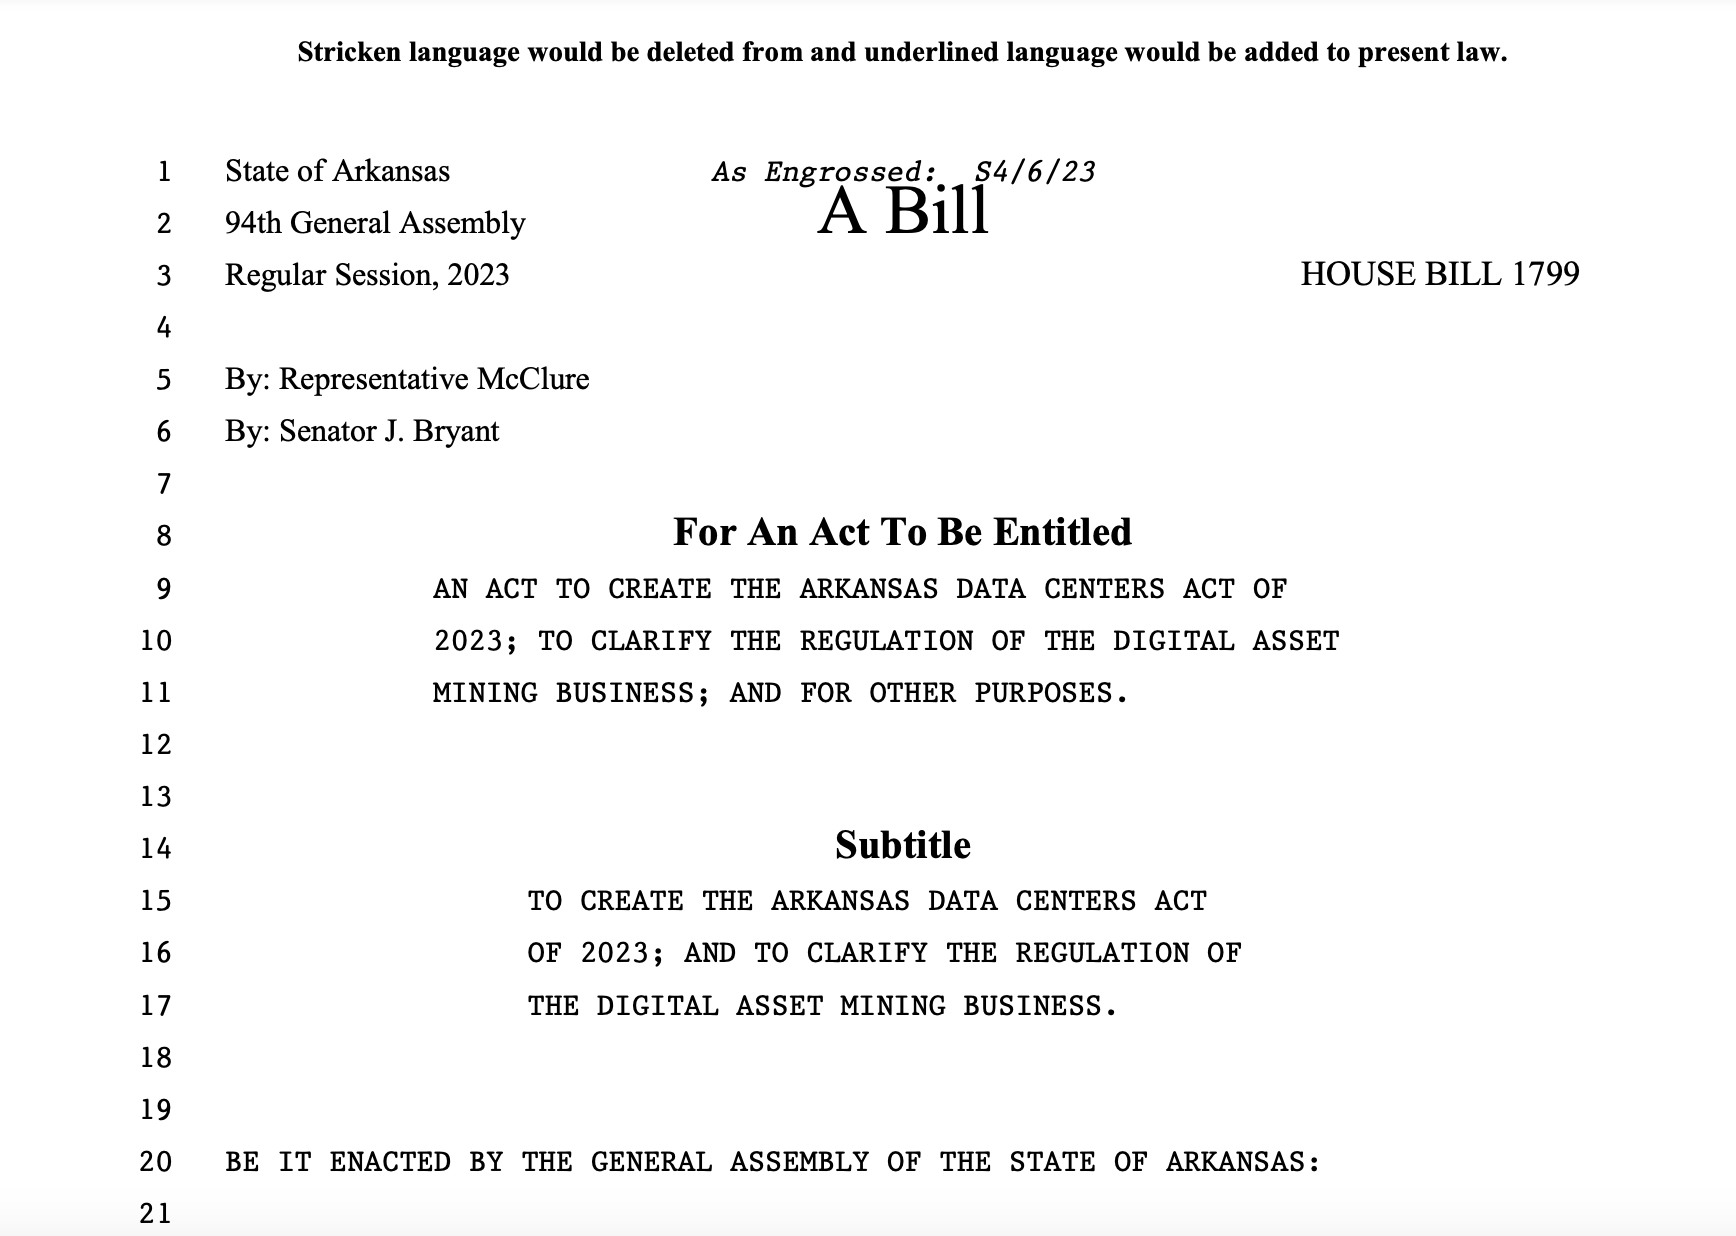 Законопроект о защите прав на добычу биткойнов принят в Сенате и Палате представителей штата Арканзас